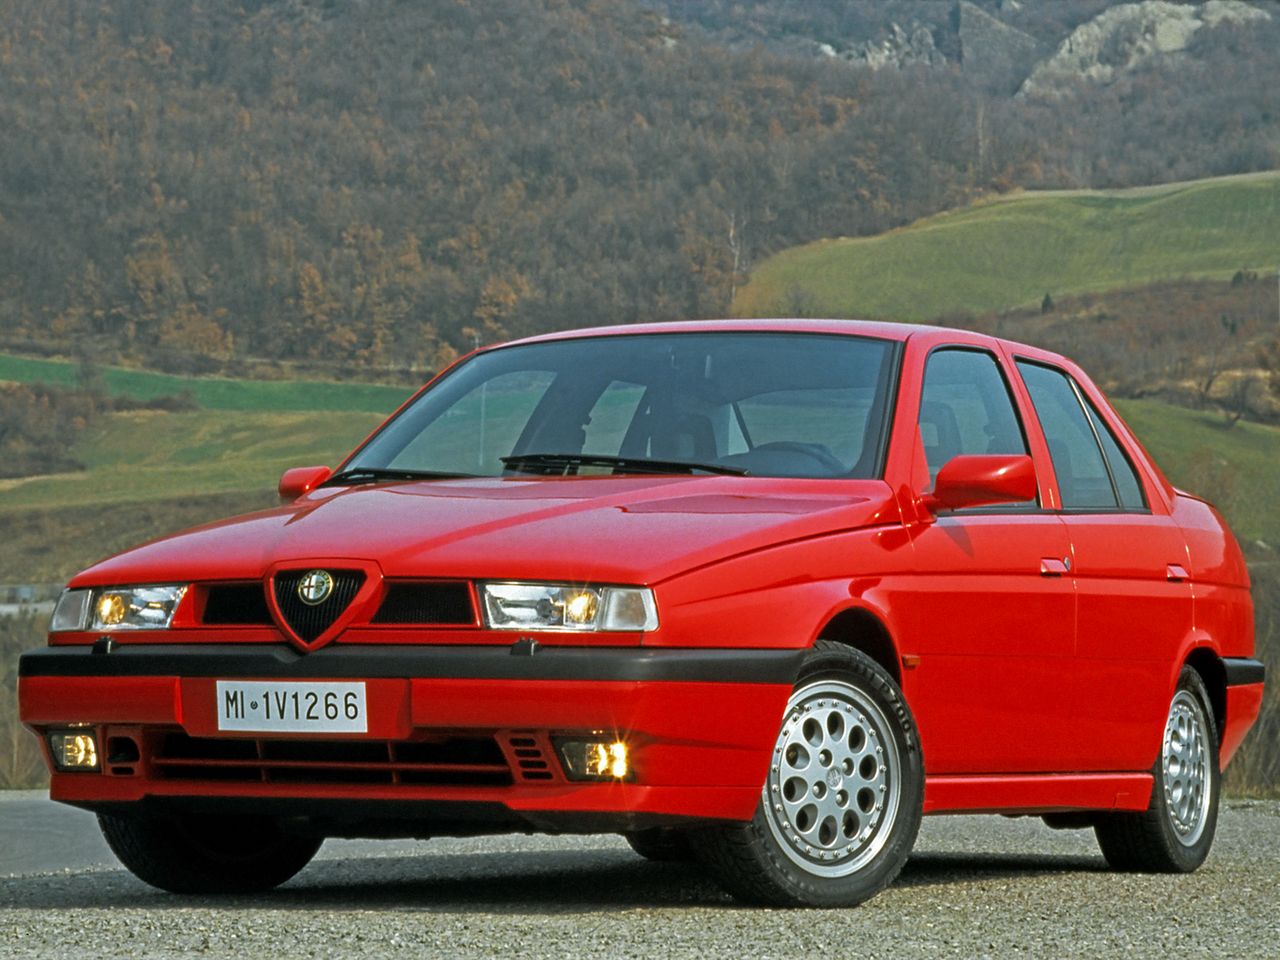 Alfa Romeo 155 Q4 ma przejęty z Lancii Delty silnik i układ napędowy.